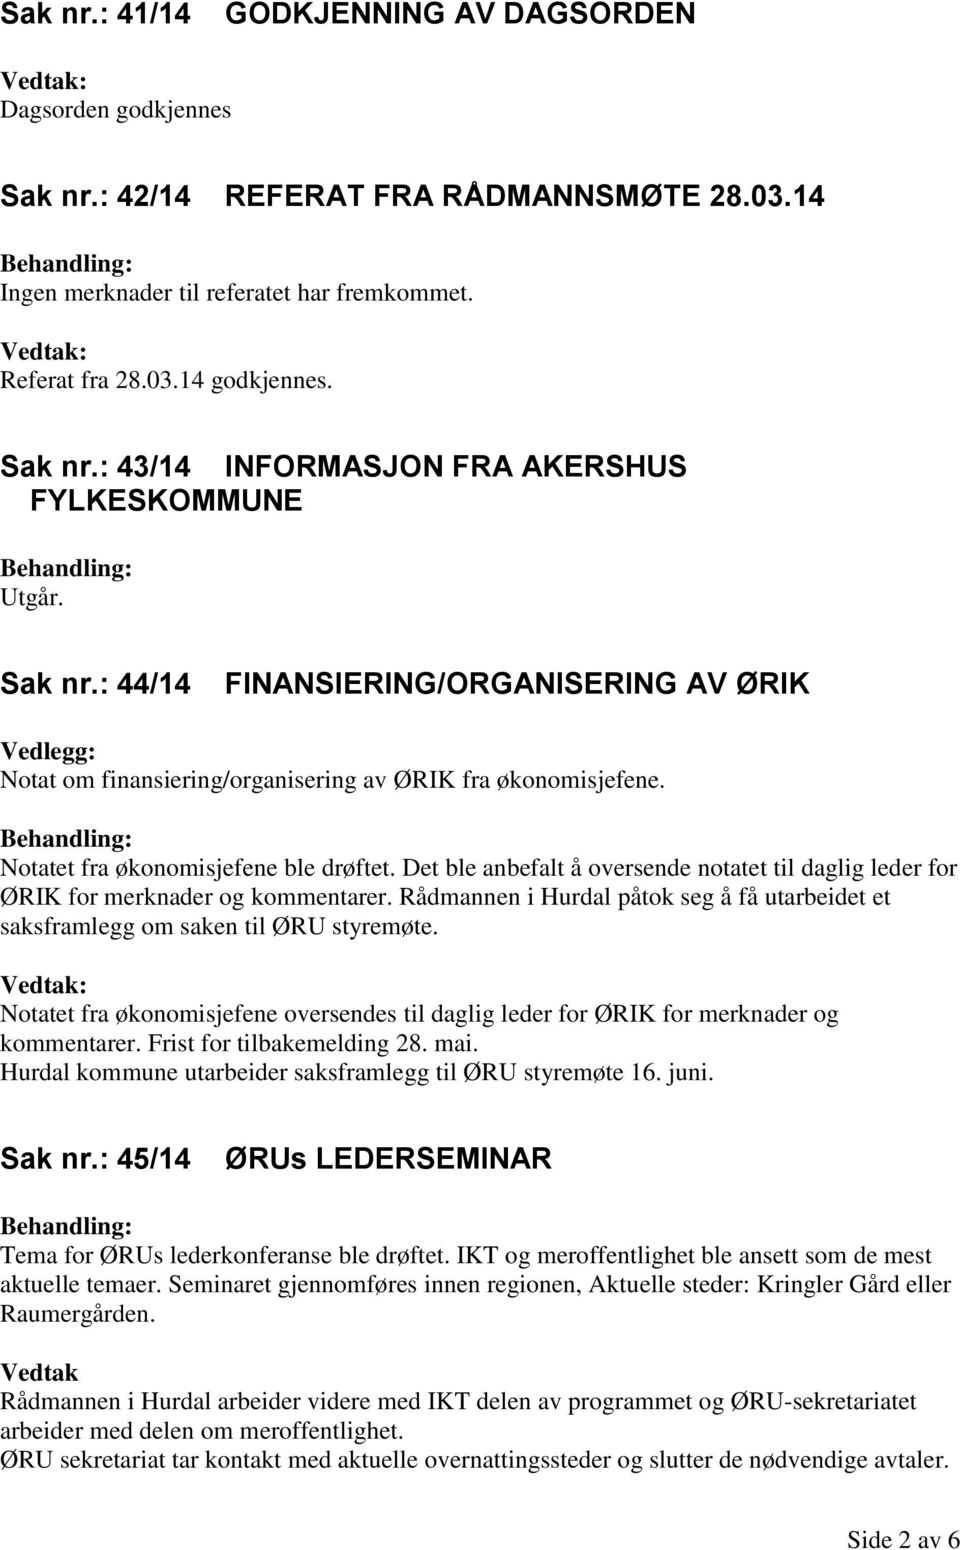 Det ble anbefalt å oversende notatet til daglig leder for ØRIK for merknader og kommentarer. Rådmannen i Hurdal påtok seg å få utarbeidet et saksframlegg om saken til ØRU styremøte.